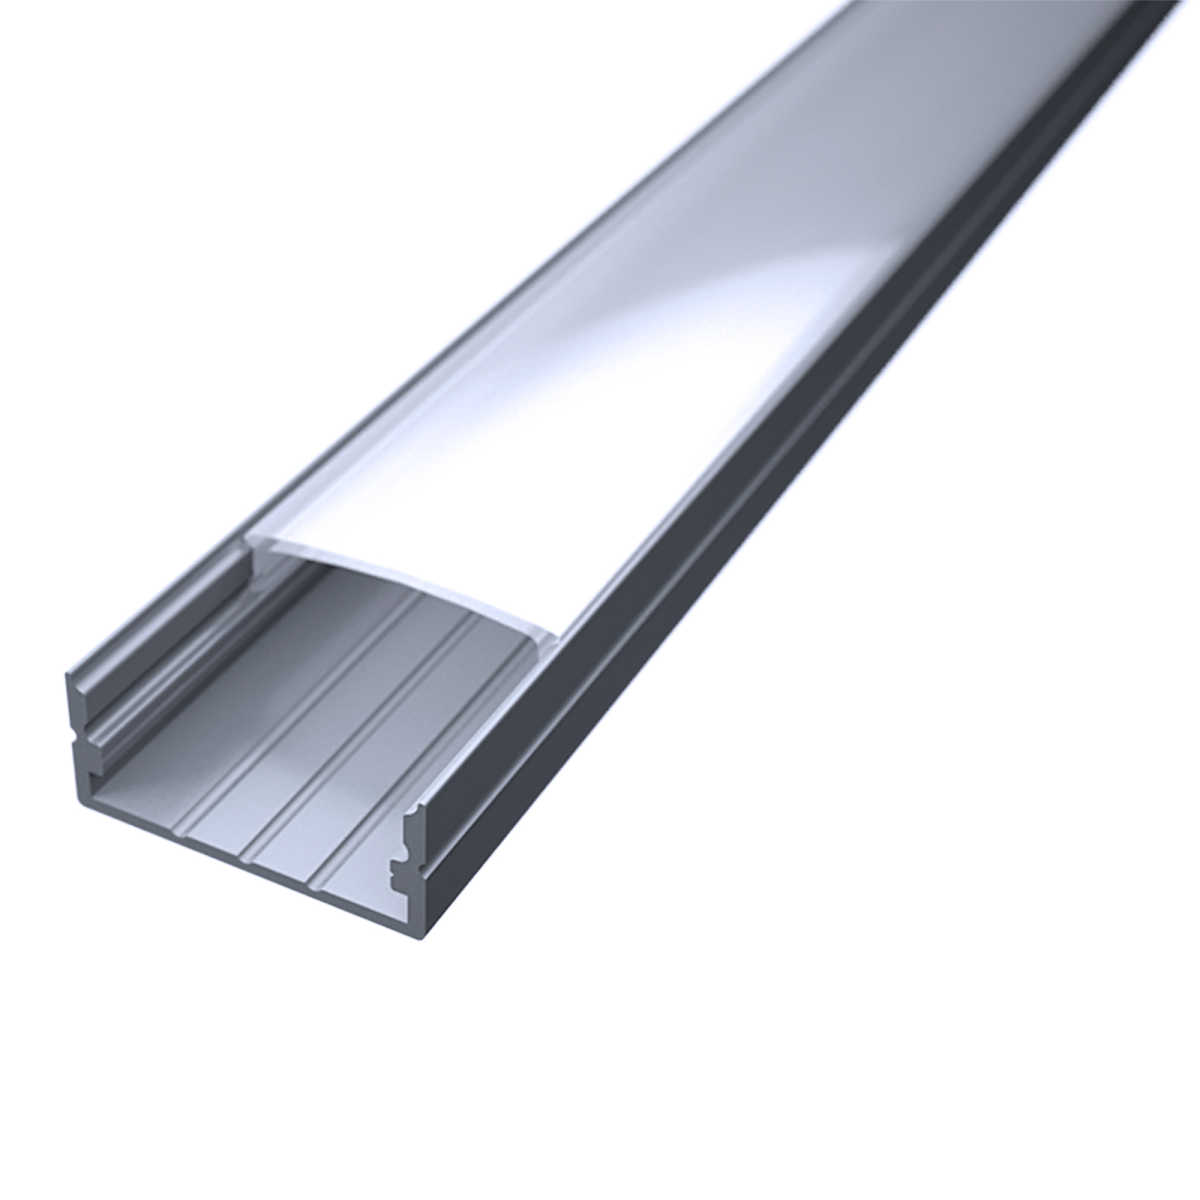 LED Flachprofil "Slim-Line max" | Abdeckung diffus | Zuschnitt auf 105cm |